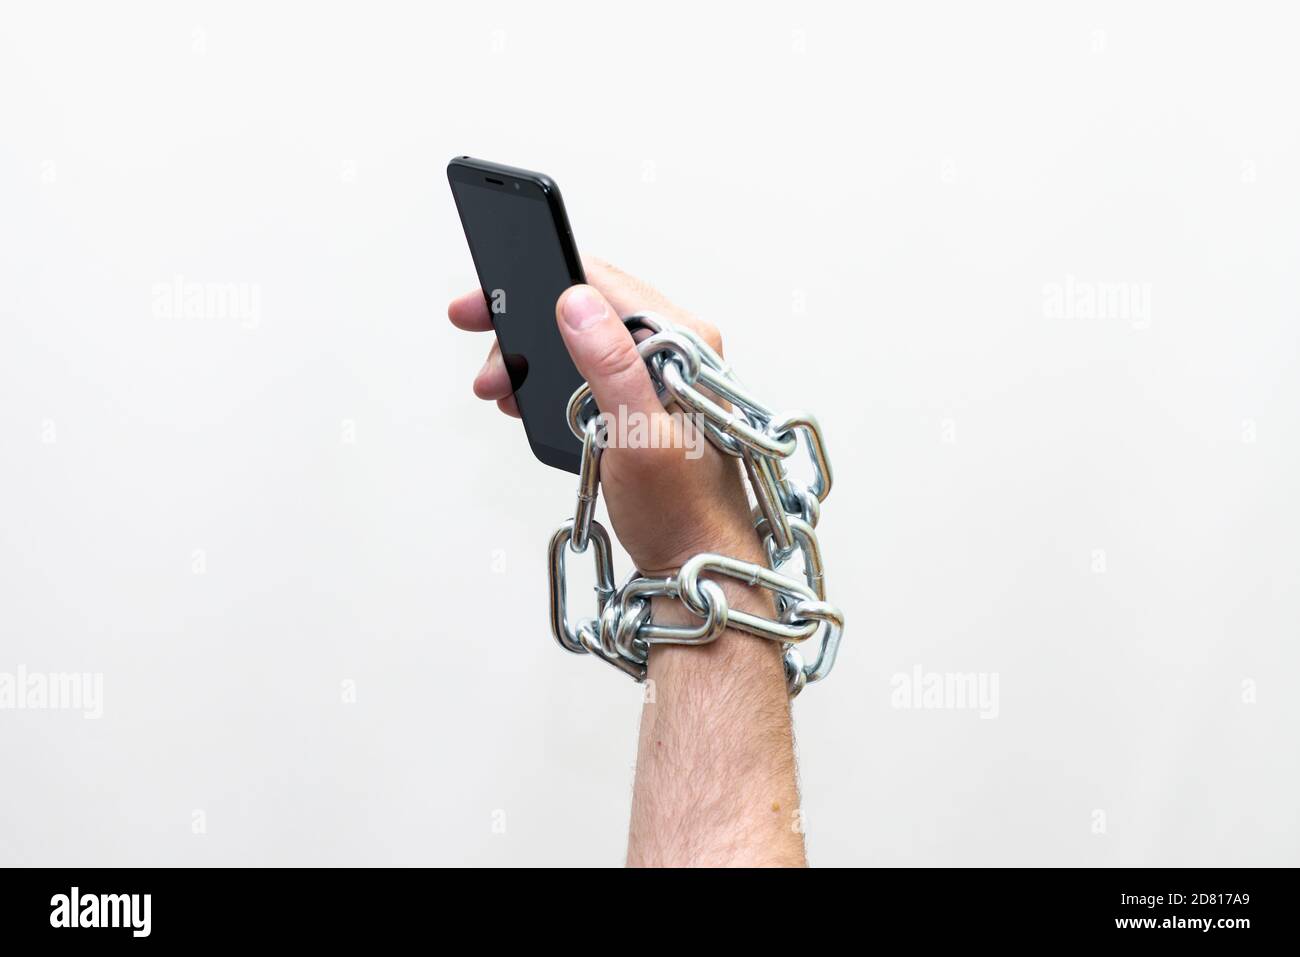 Gros plan Homme tenant un smartphone avec chaîne métallique sur fond blanc studio. Concept de sécurité Banque D'Images